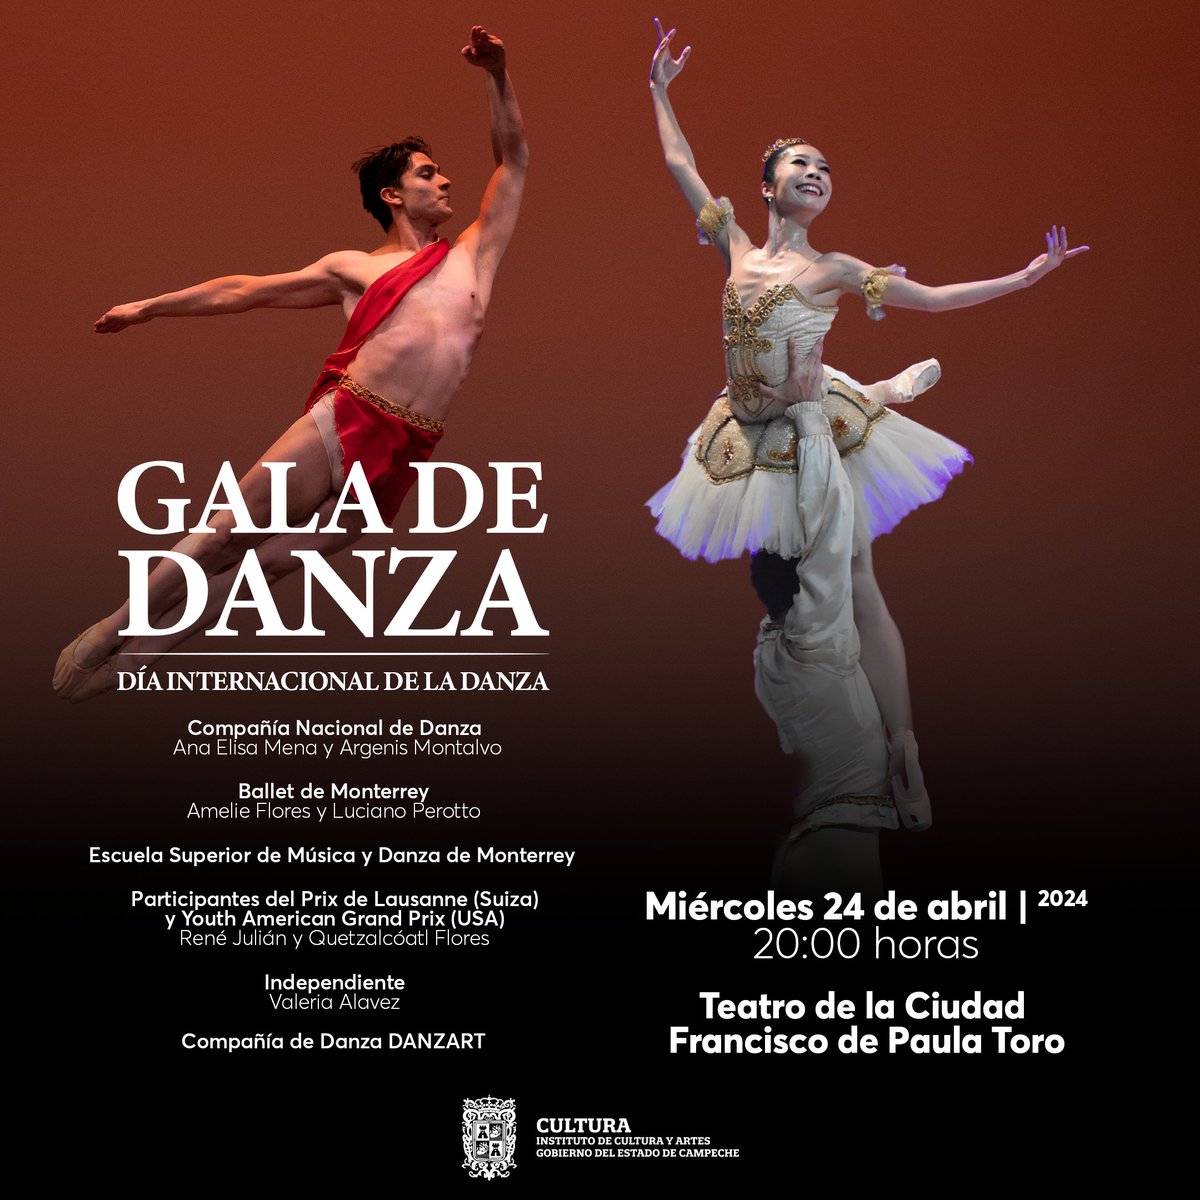 Este miércoles 24 de abril no te puedes perder la Gala de Danza en el Teatro de la Ciudad Francisco de Paula Toro, a partir de las 20:00 hrs. Será una presentación espectacular!